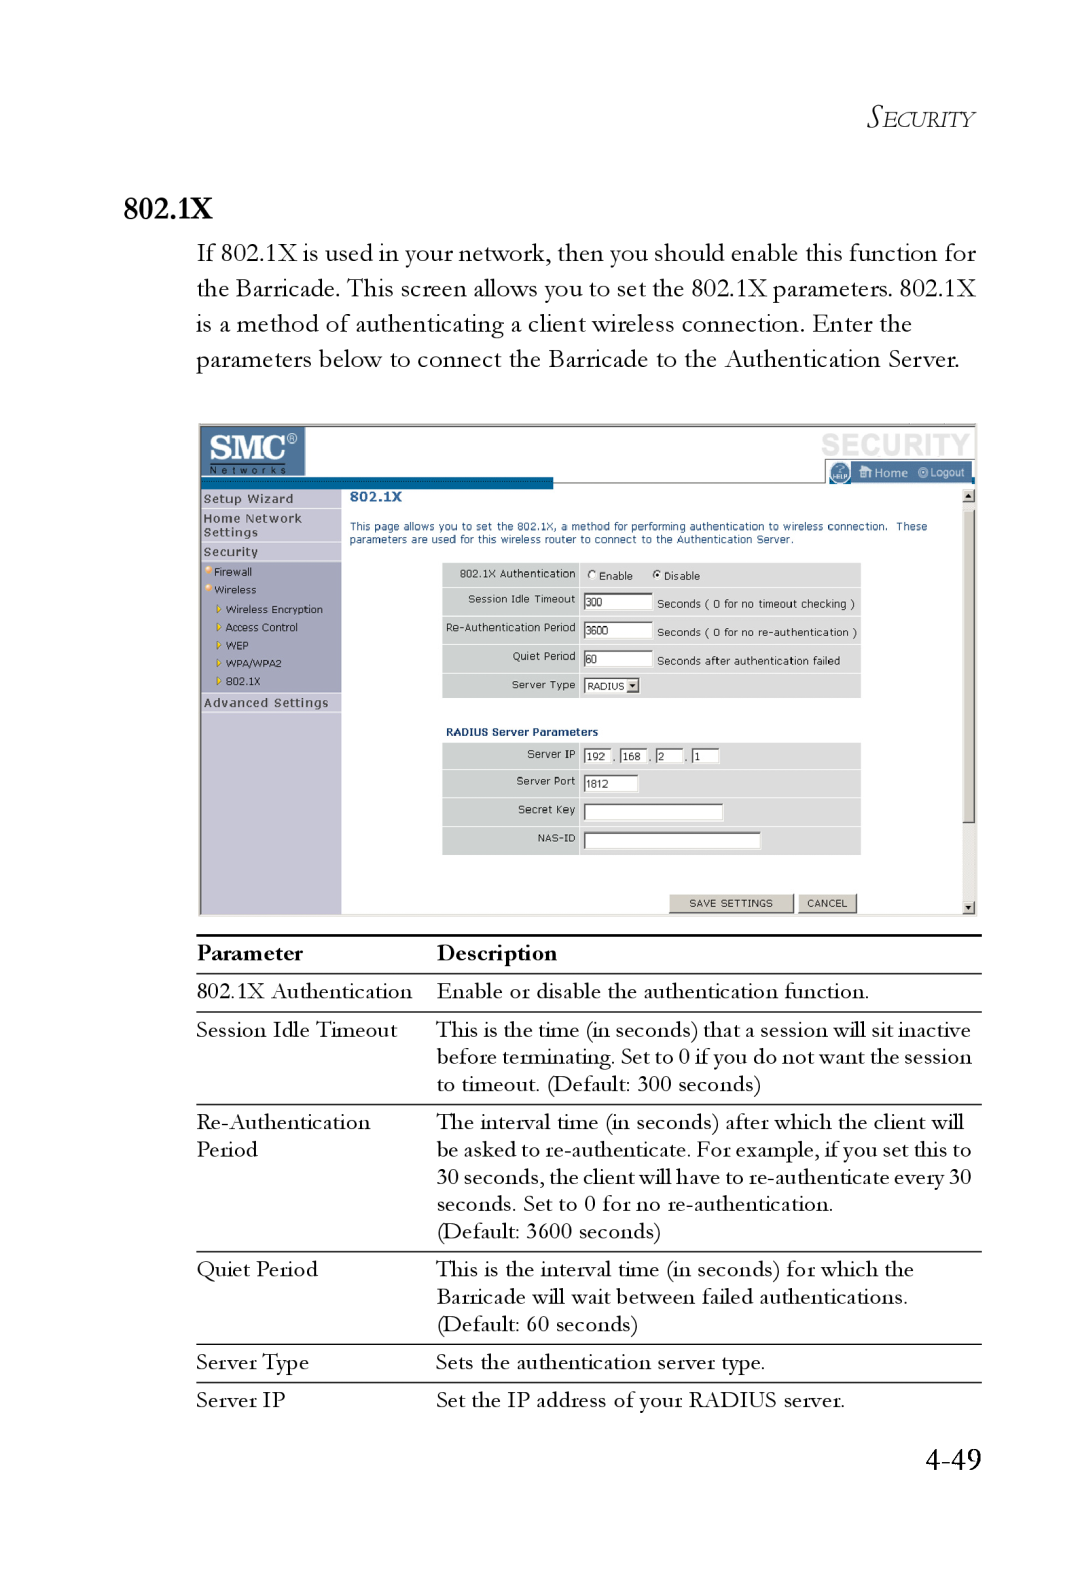 SMC Networks SMCWBR14T-G manual 4-49, Parameter, Description, 802.1X Authentication 